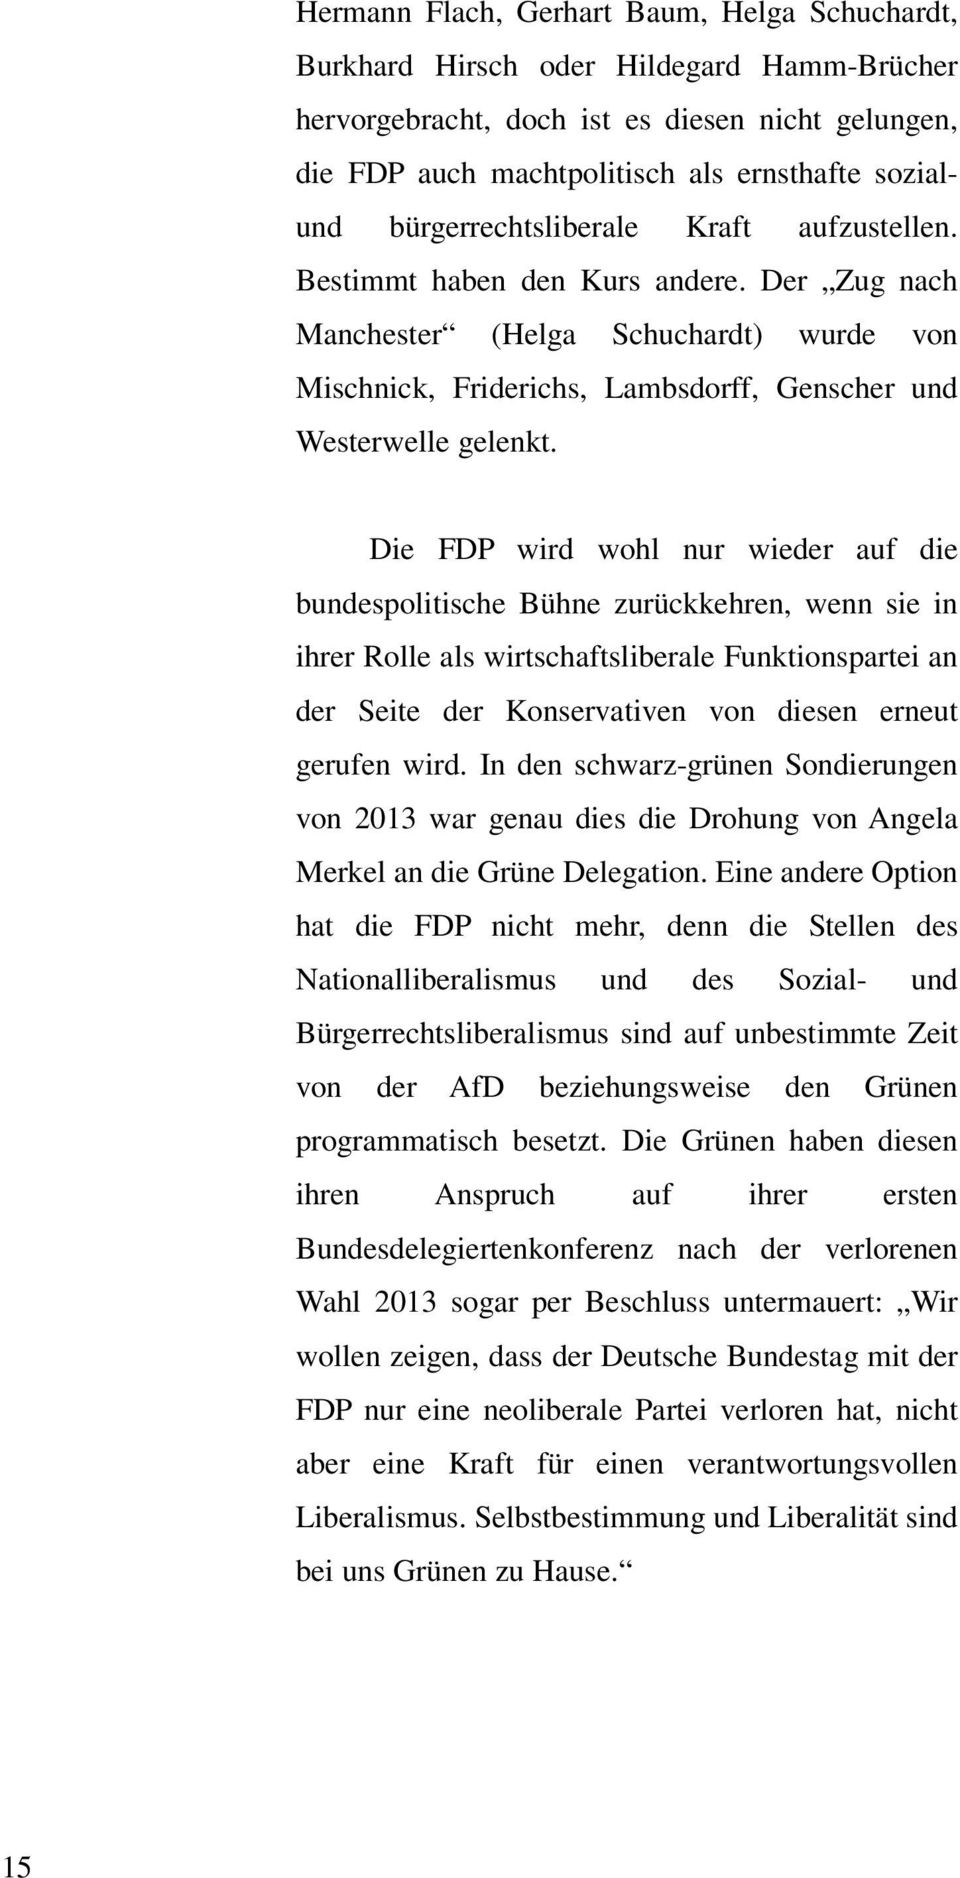 Die FDP wird wohl nur wieder auf die bundespolitische Bühne zurückkehren, wenn sie in ihrer Rolle als wirtschaftsliberale Funktionspartei an der Seite der Konservativen von diesen erneut gerufen wird.